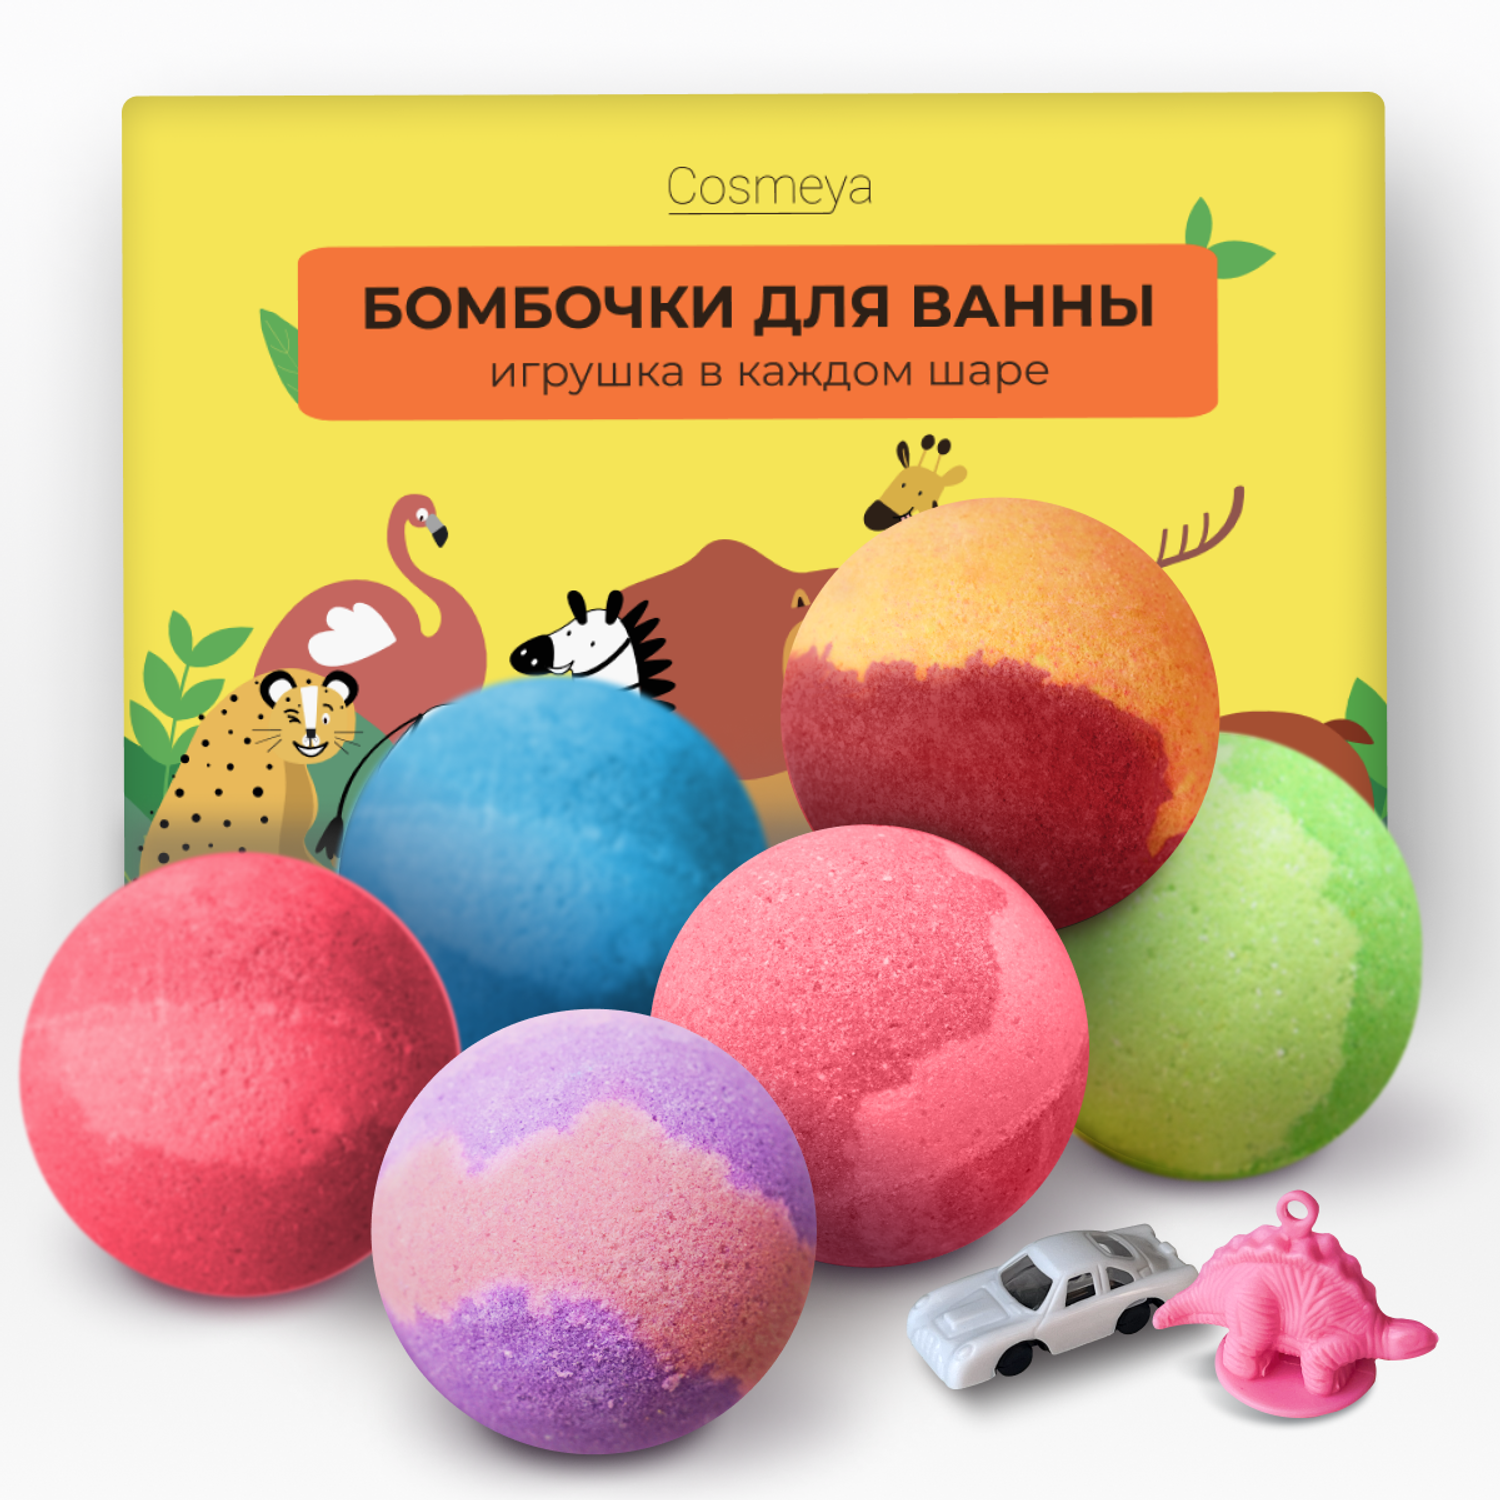 Бомбочки для ванны Cosmeya детские с игрушкой набор 6 шт - фото 1